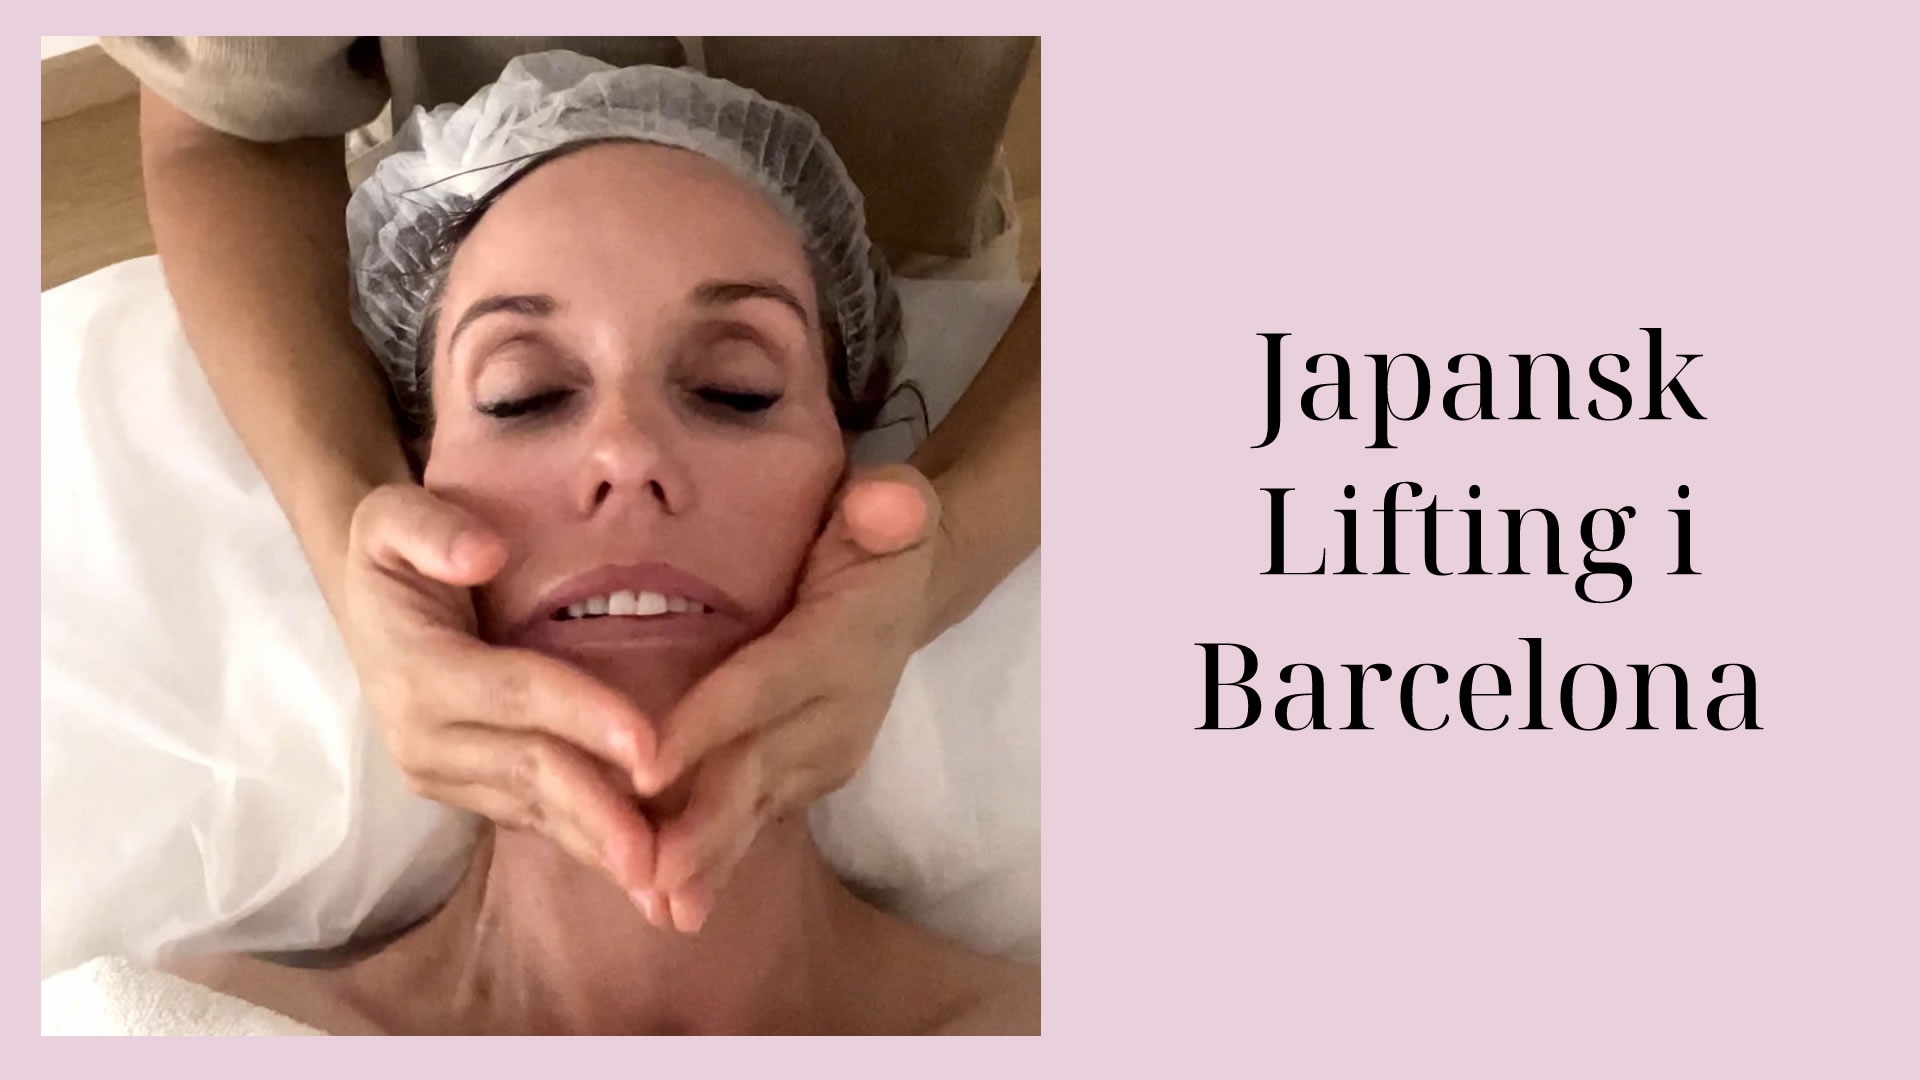 Japansk lifting i barcelona